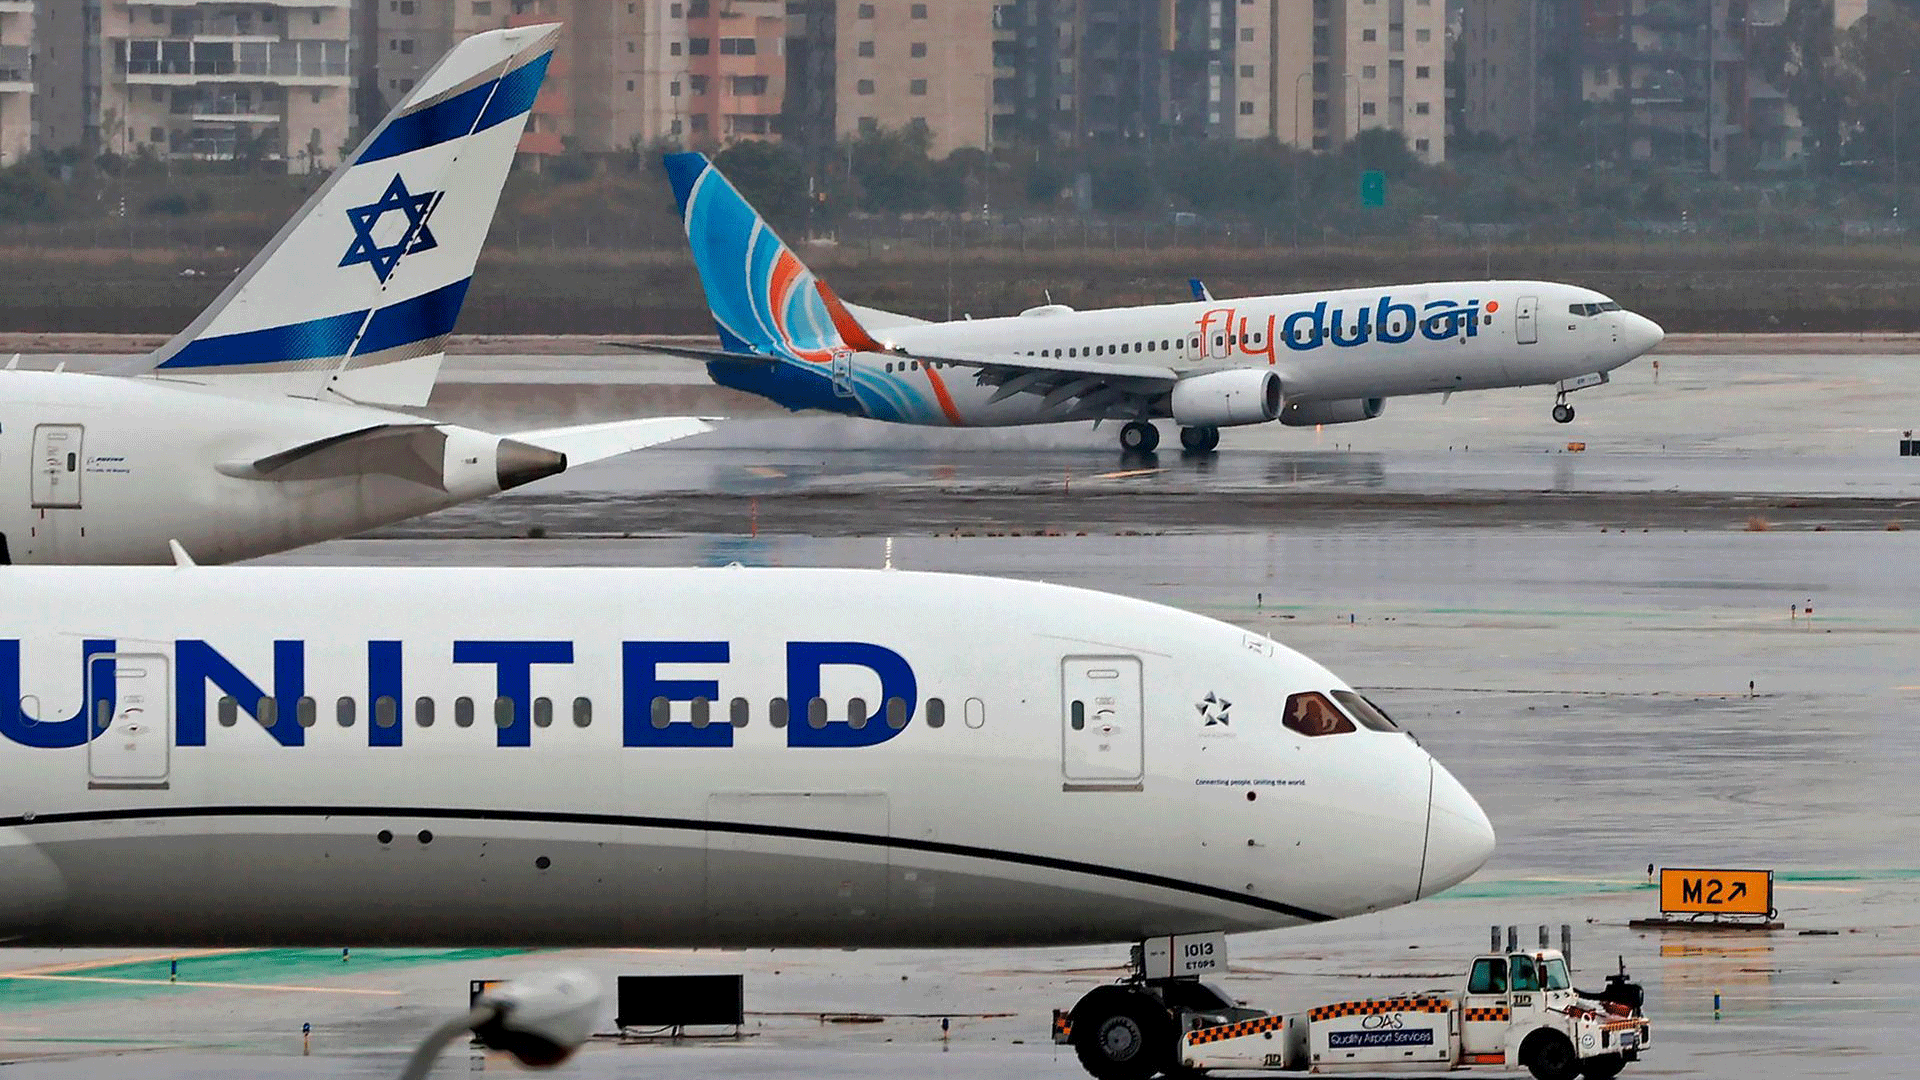 طائرة فلاي دبي تحط في مطار بن غوريون القريب من تل أبيب في 26 تشرين الثاني/نوفمبر 2020 بعد شهرين على تطبيع العلاقات بين الإمارات وإسرائيل